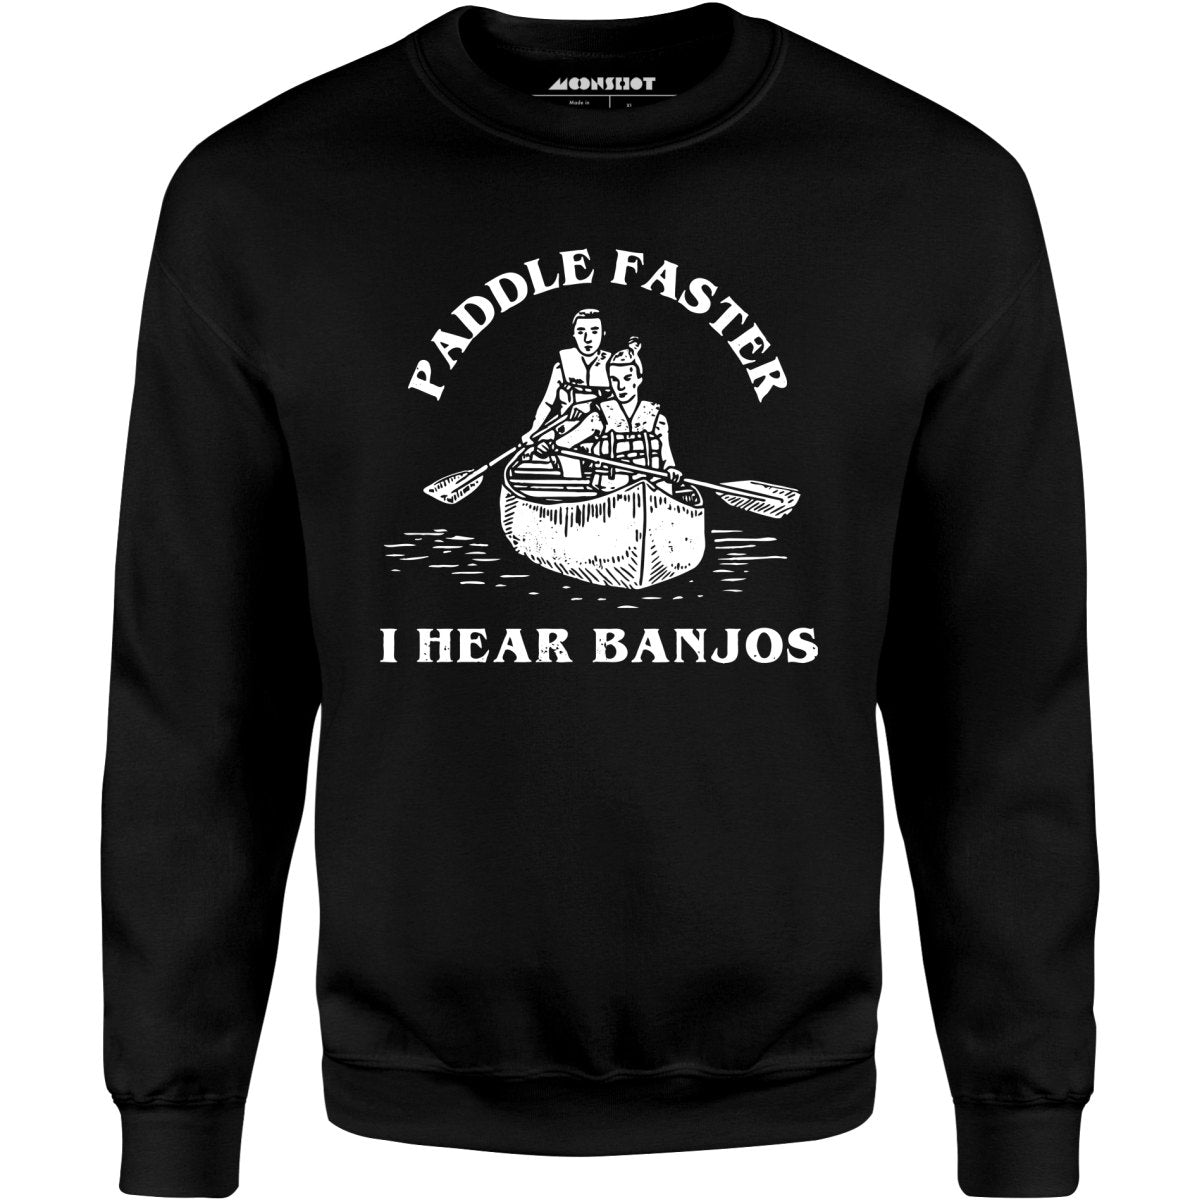 Paddle Faster I Hear Banjos - Unisex Sweatshirt